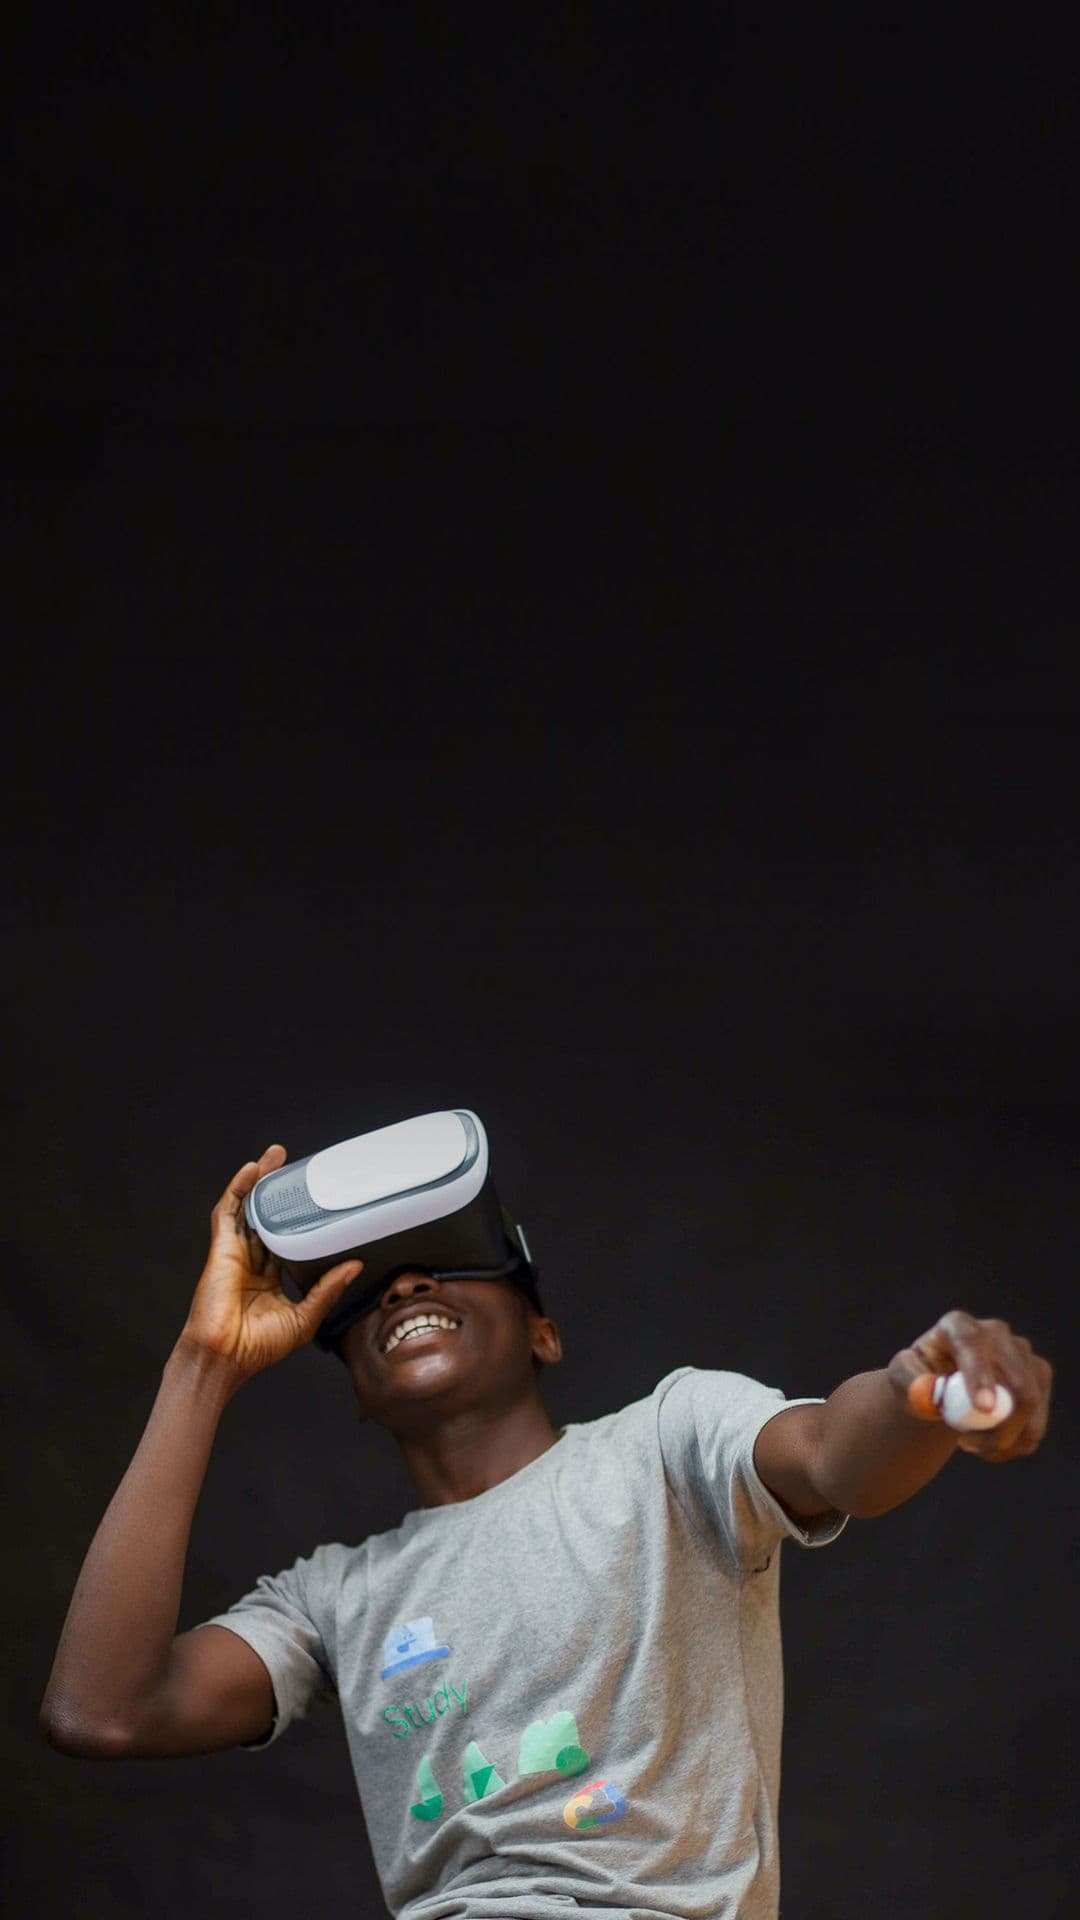 Dunkelhäutiger Junge im hellen T-Shirt trägt eine VR-Brille